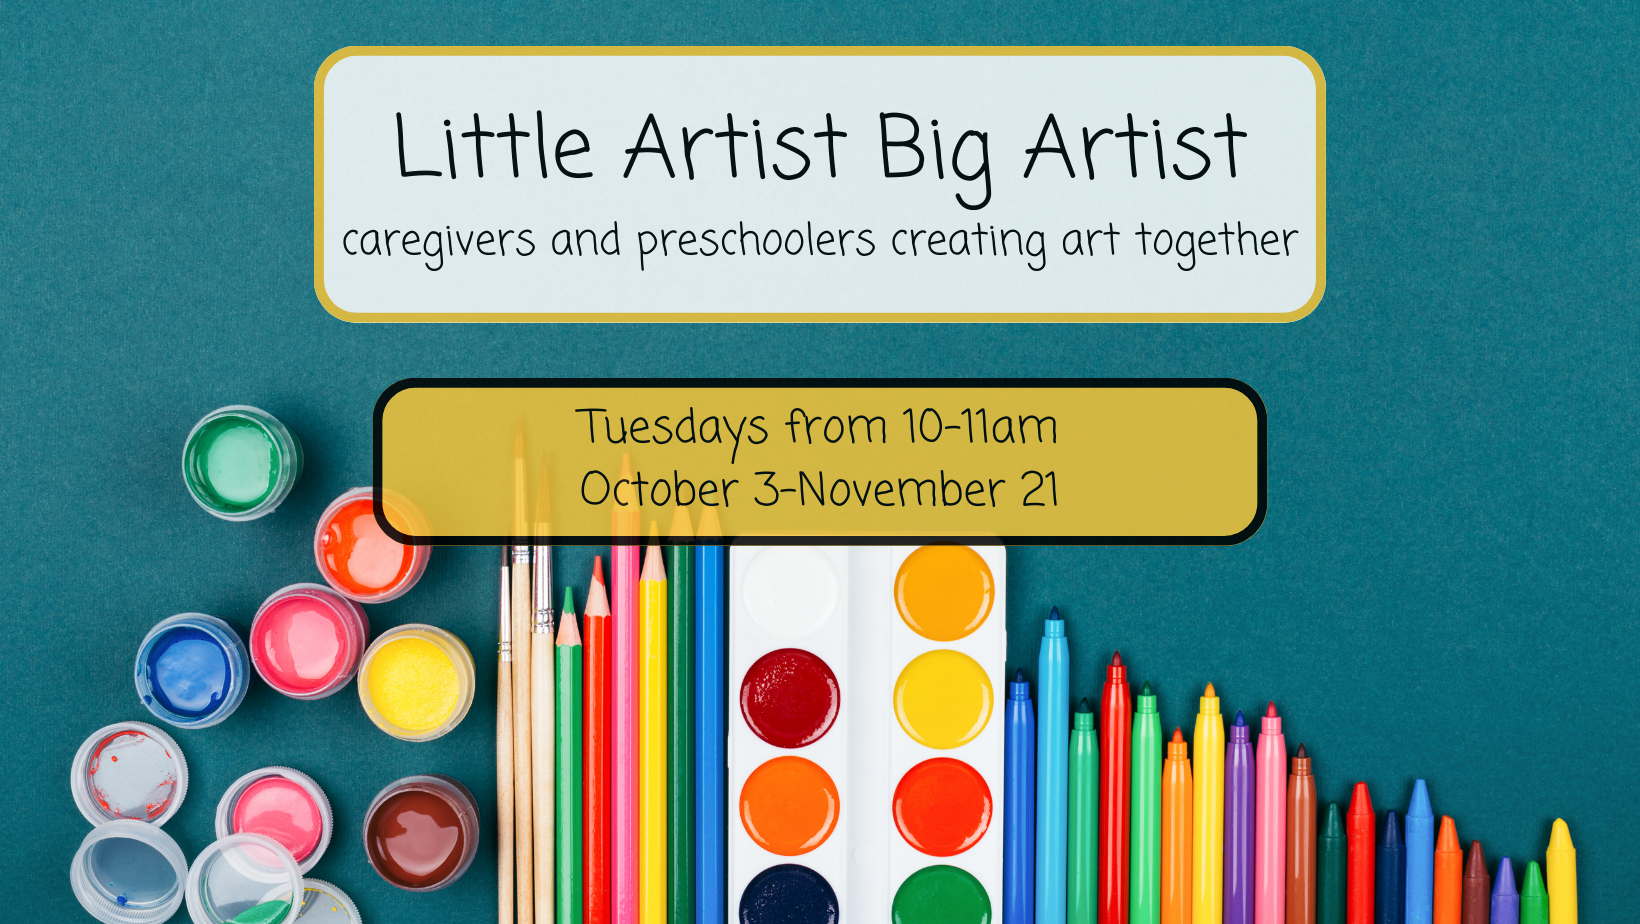 little artist big artist tuesdays from 10-11am october 3-november 21